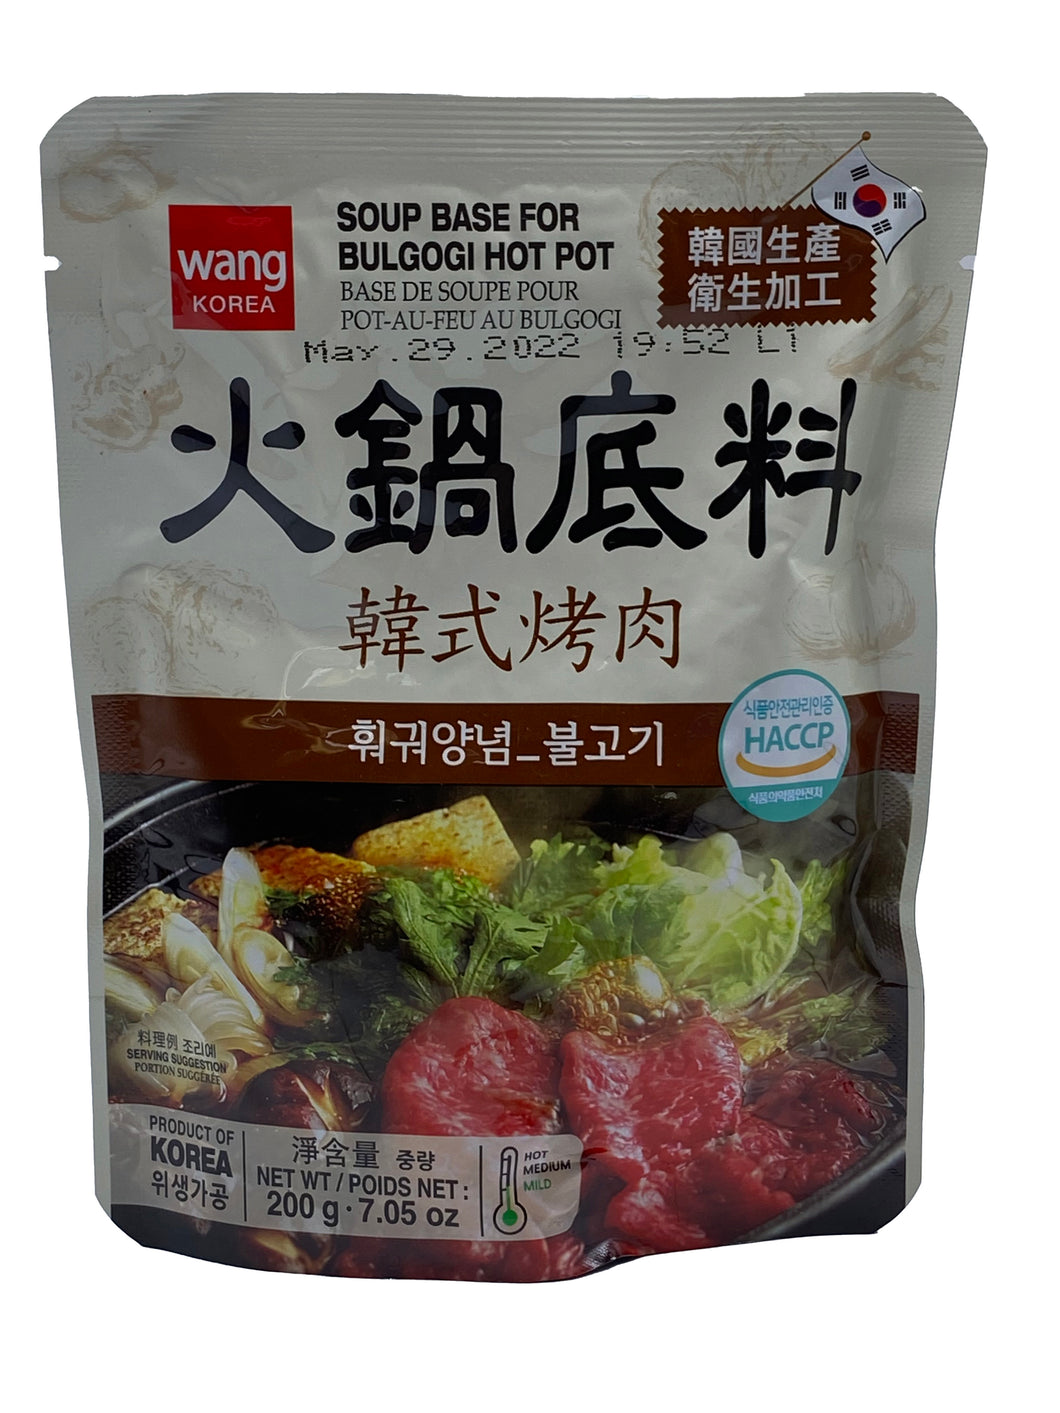 Wang Soup Base for Bulgogi Hot Pot